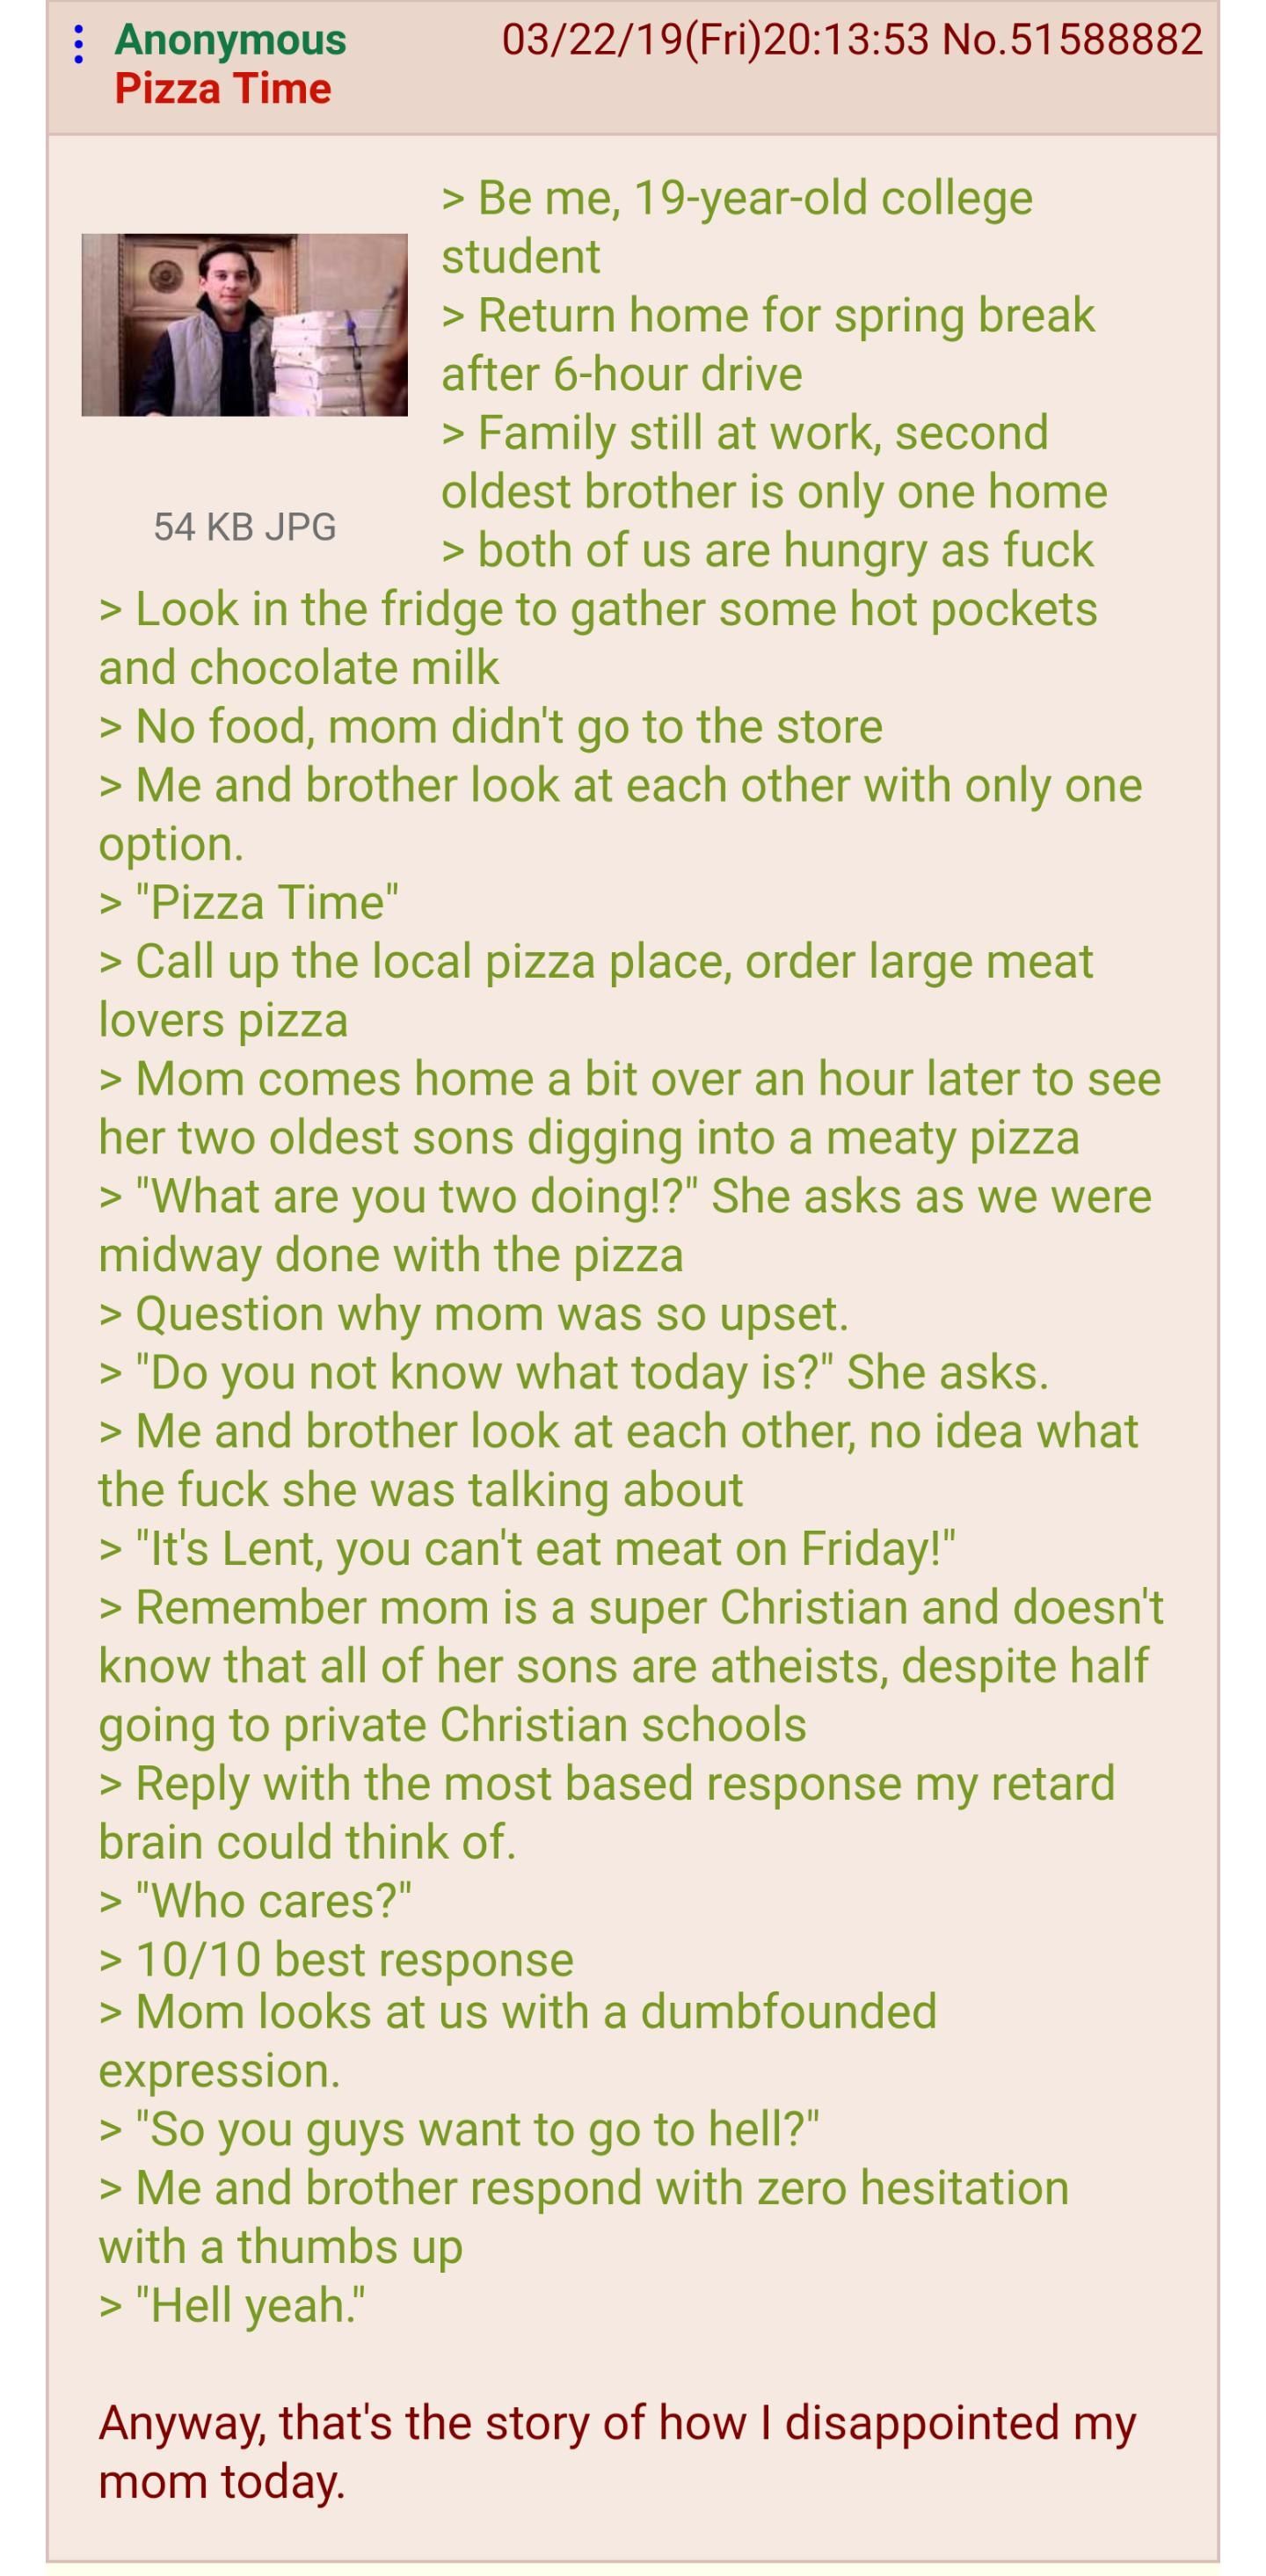 anon love pizza